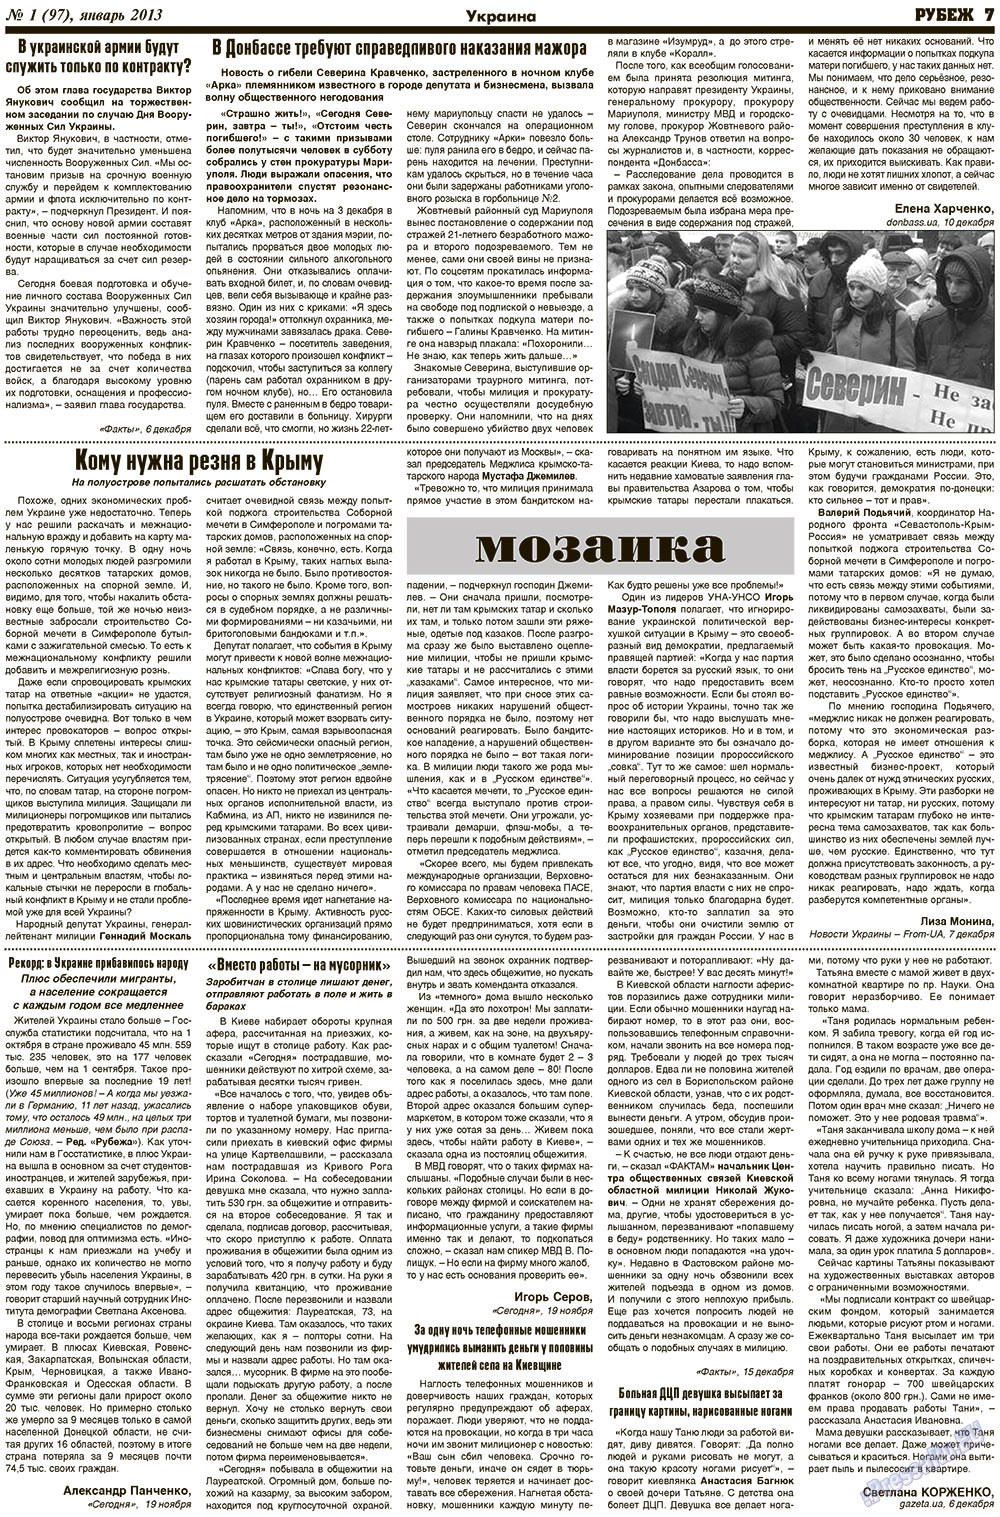 Рубеж (газета). 2013 год, номер 1, стр. 7